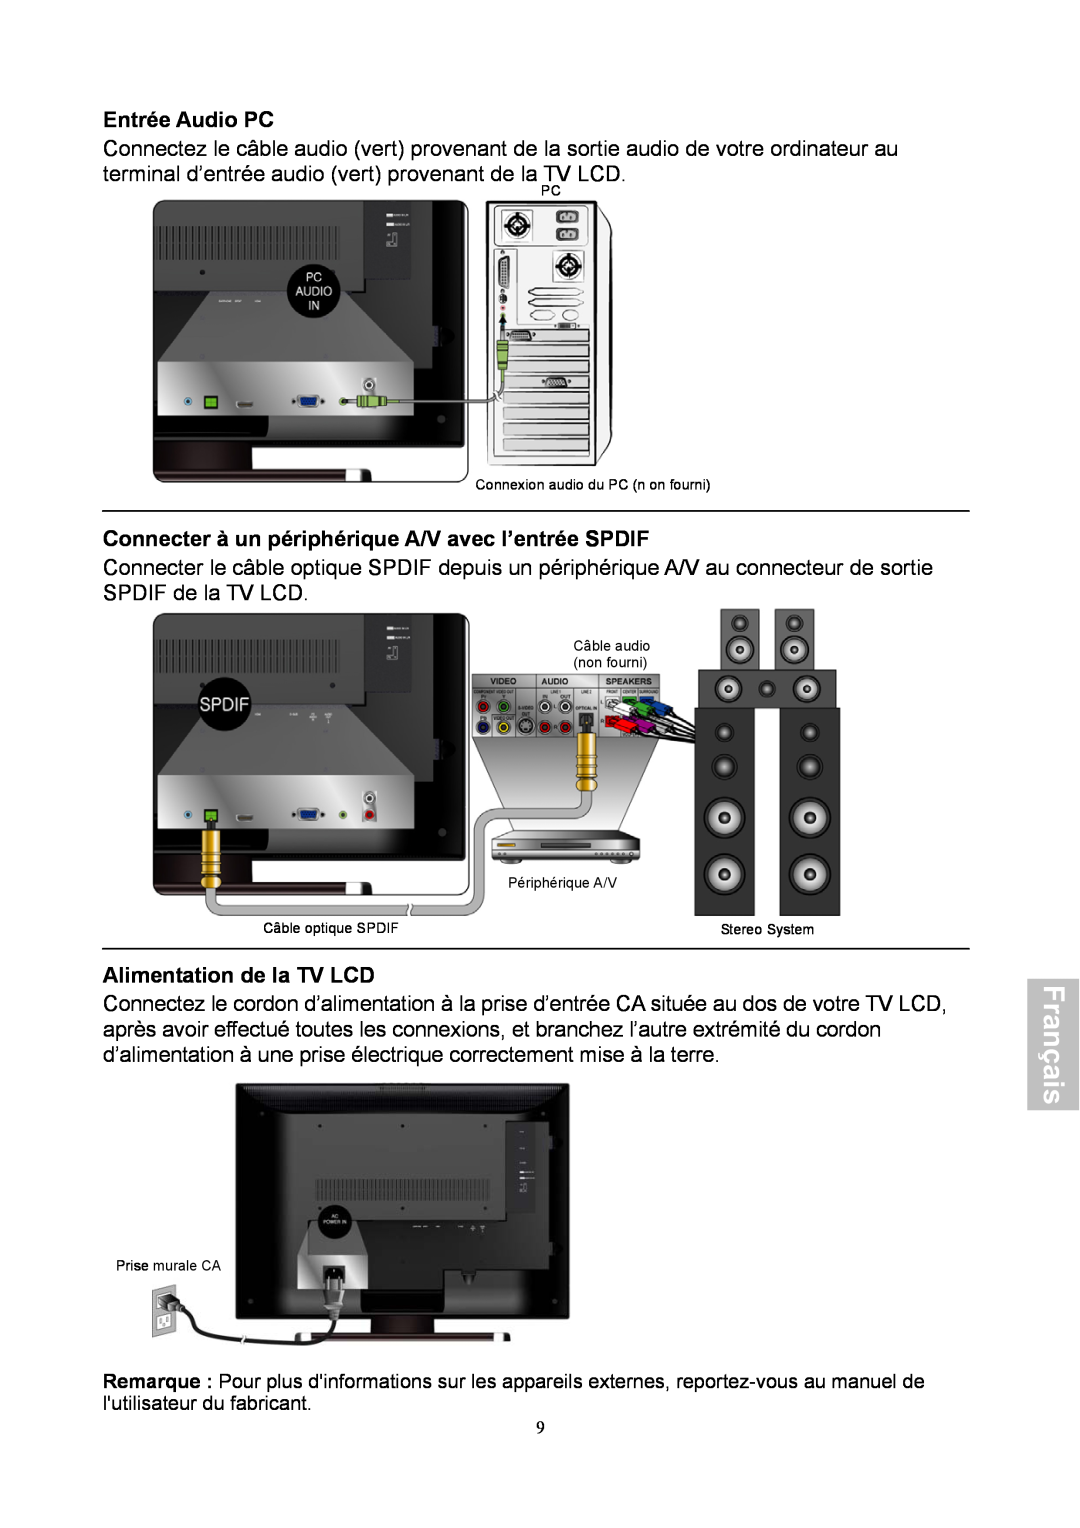 HANNspree XV Series 32 Entrée Audio PC, Connecter à un périphérique A/V avec l’entrée SPDIF, Alimentation de la TV LCD 